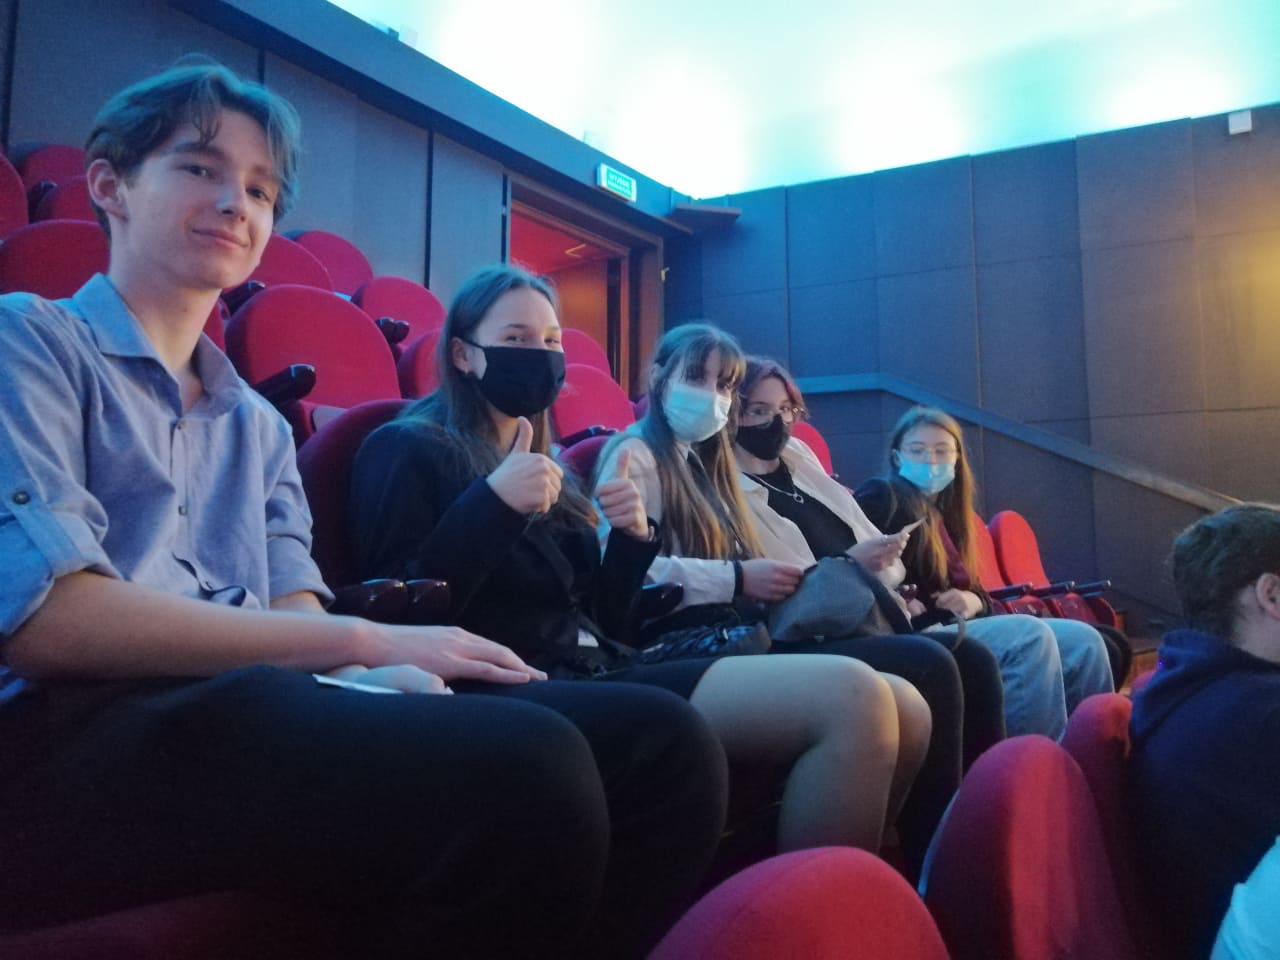 Uczniowie w teatrze